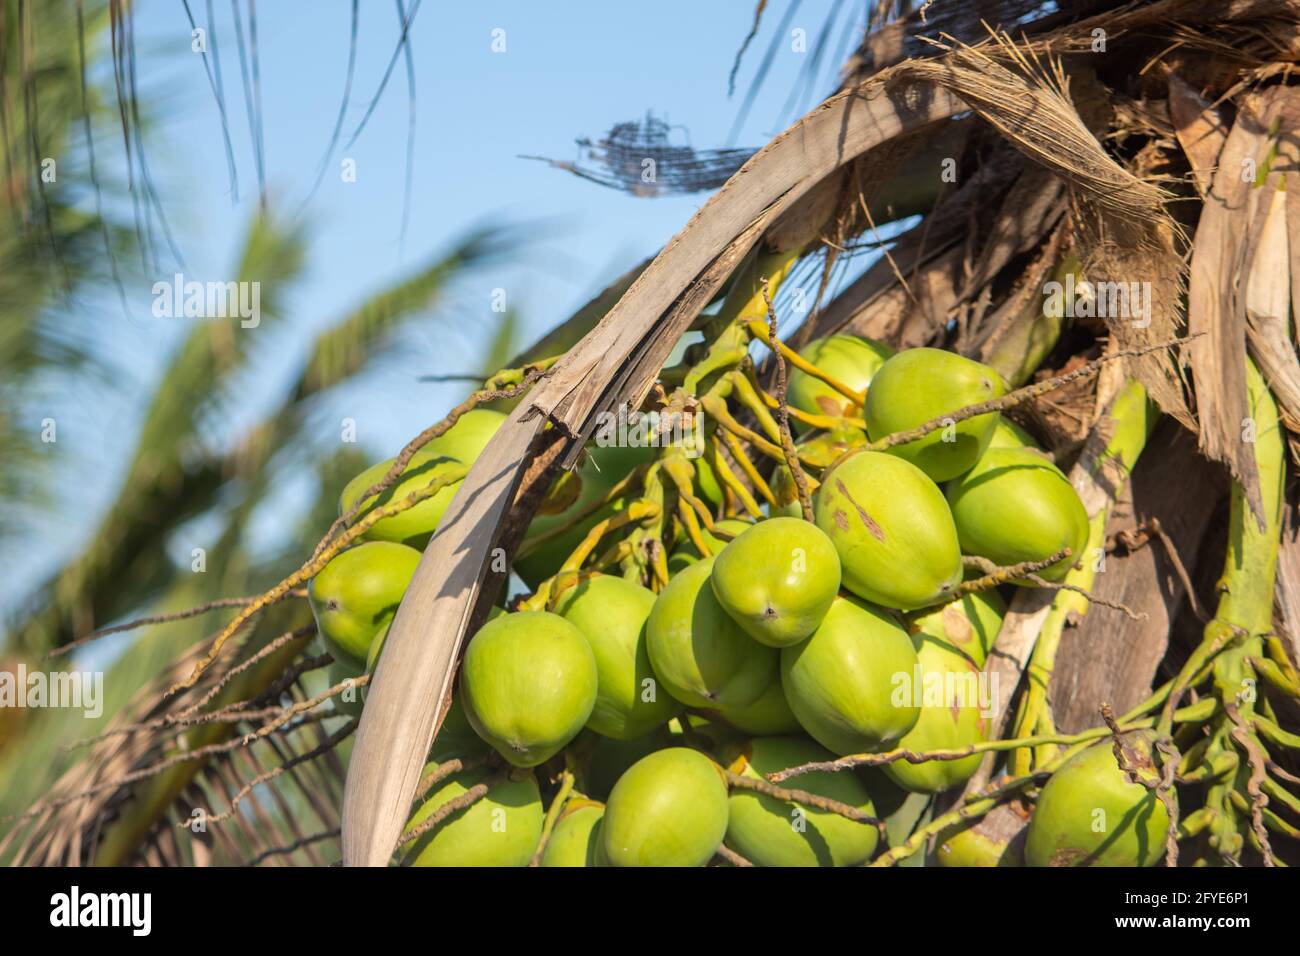 Frische neugeborene Baby Kokosnüsse auf einer  Kokosnussbaumplantage.Angruppierung von frischen Baby  Kokosnusspalmenfrüchten auf seinem Baum. Achinga , Kleine Kokosnuss, Kleine  Kokosnuss Stockfotografie - Alamy